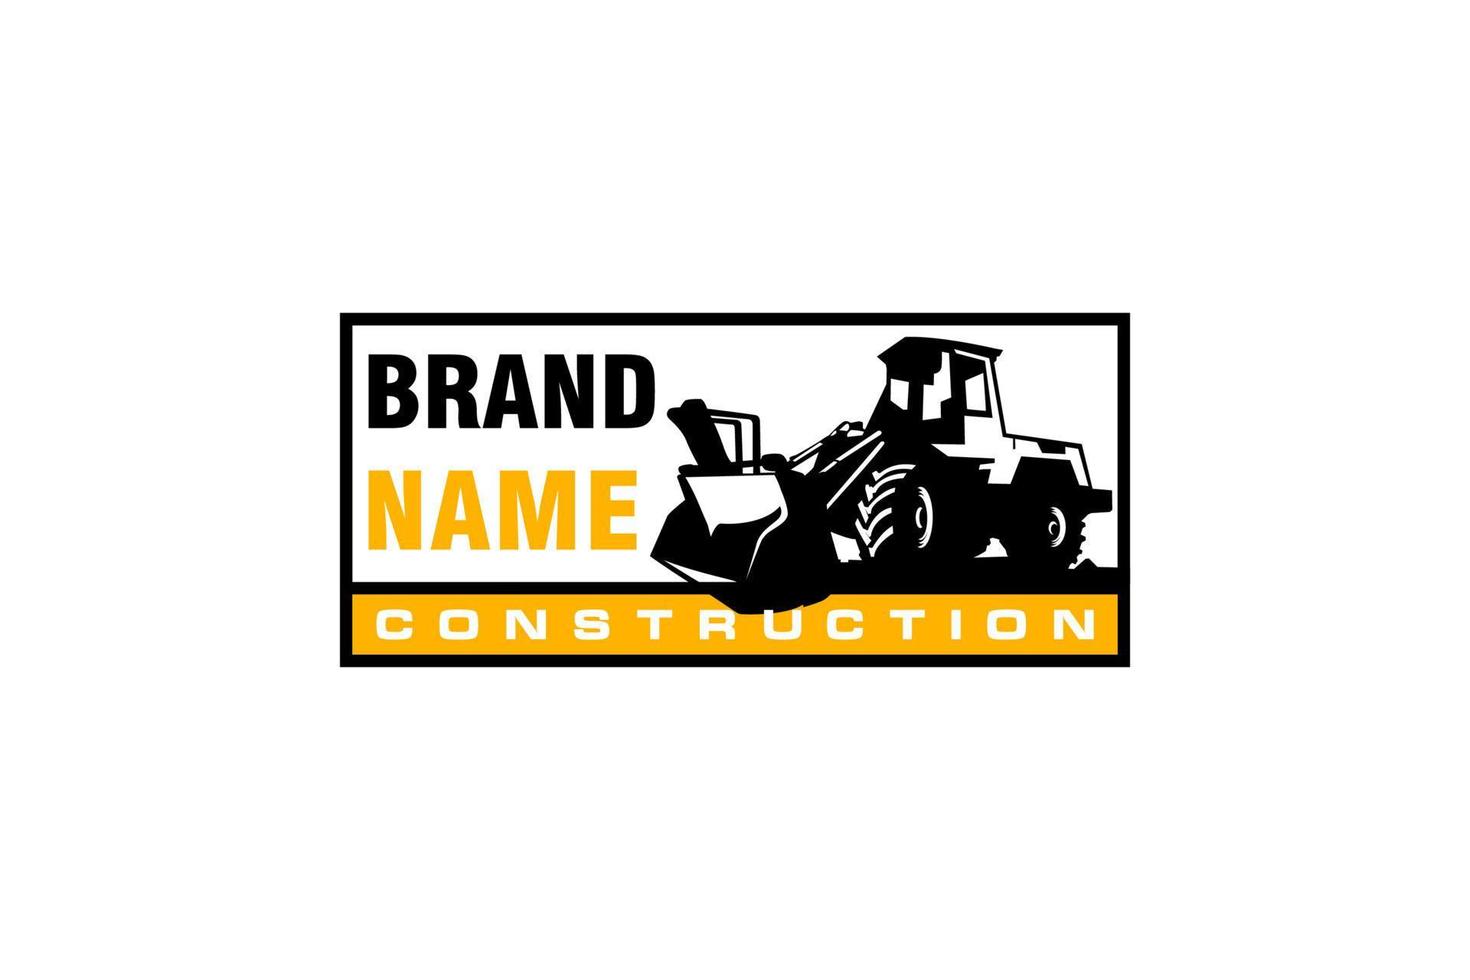 bulldozer logotyp mall vektor. tung utrustning logotyp vektor för byggföretag. kreativ grävmaskin illustration för logotyp mall.